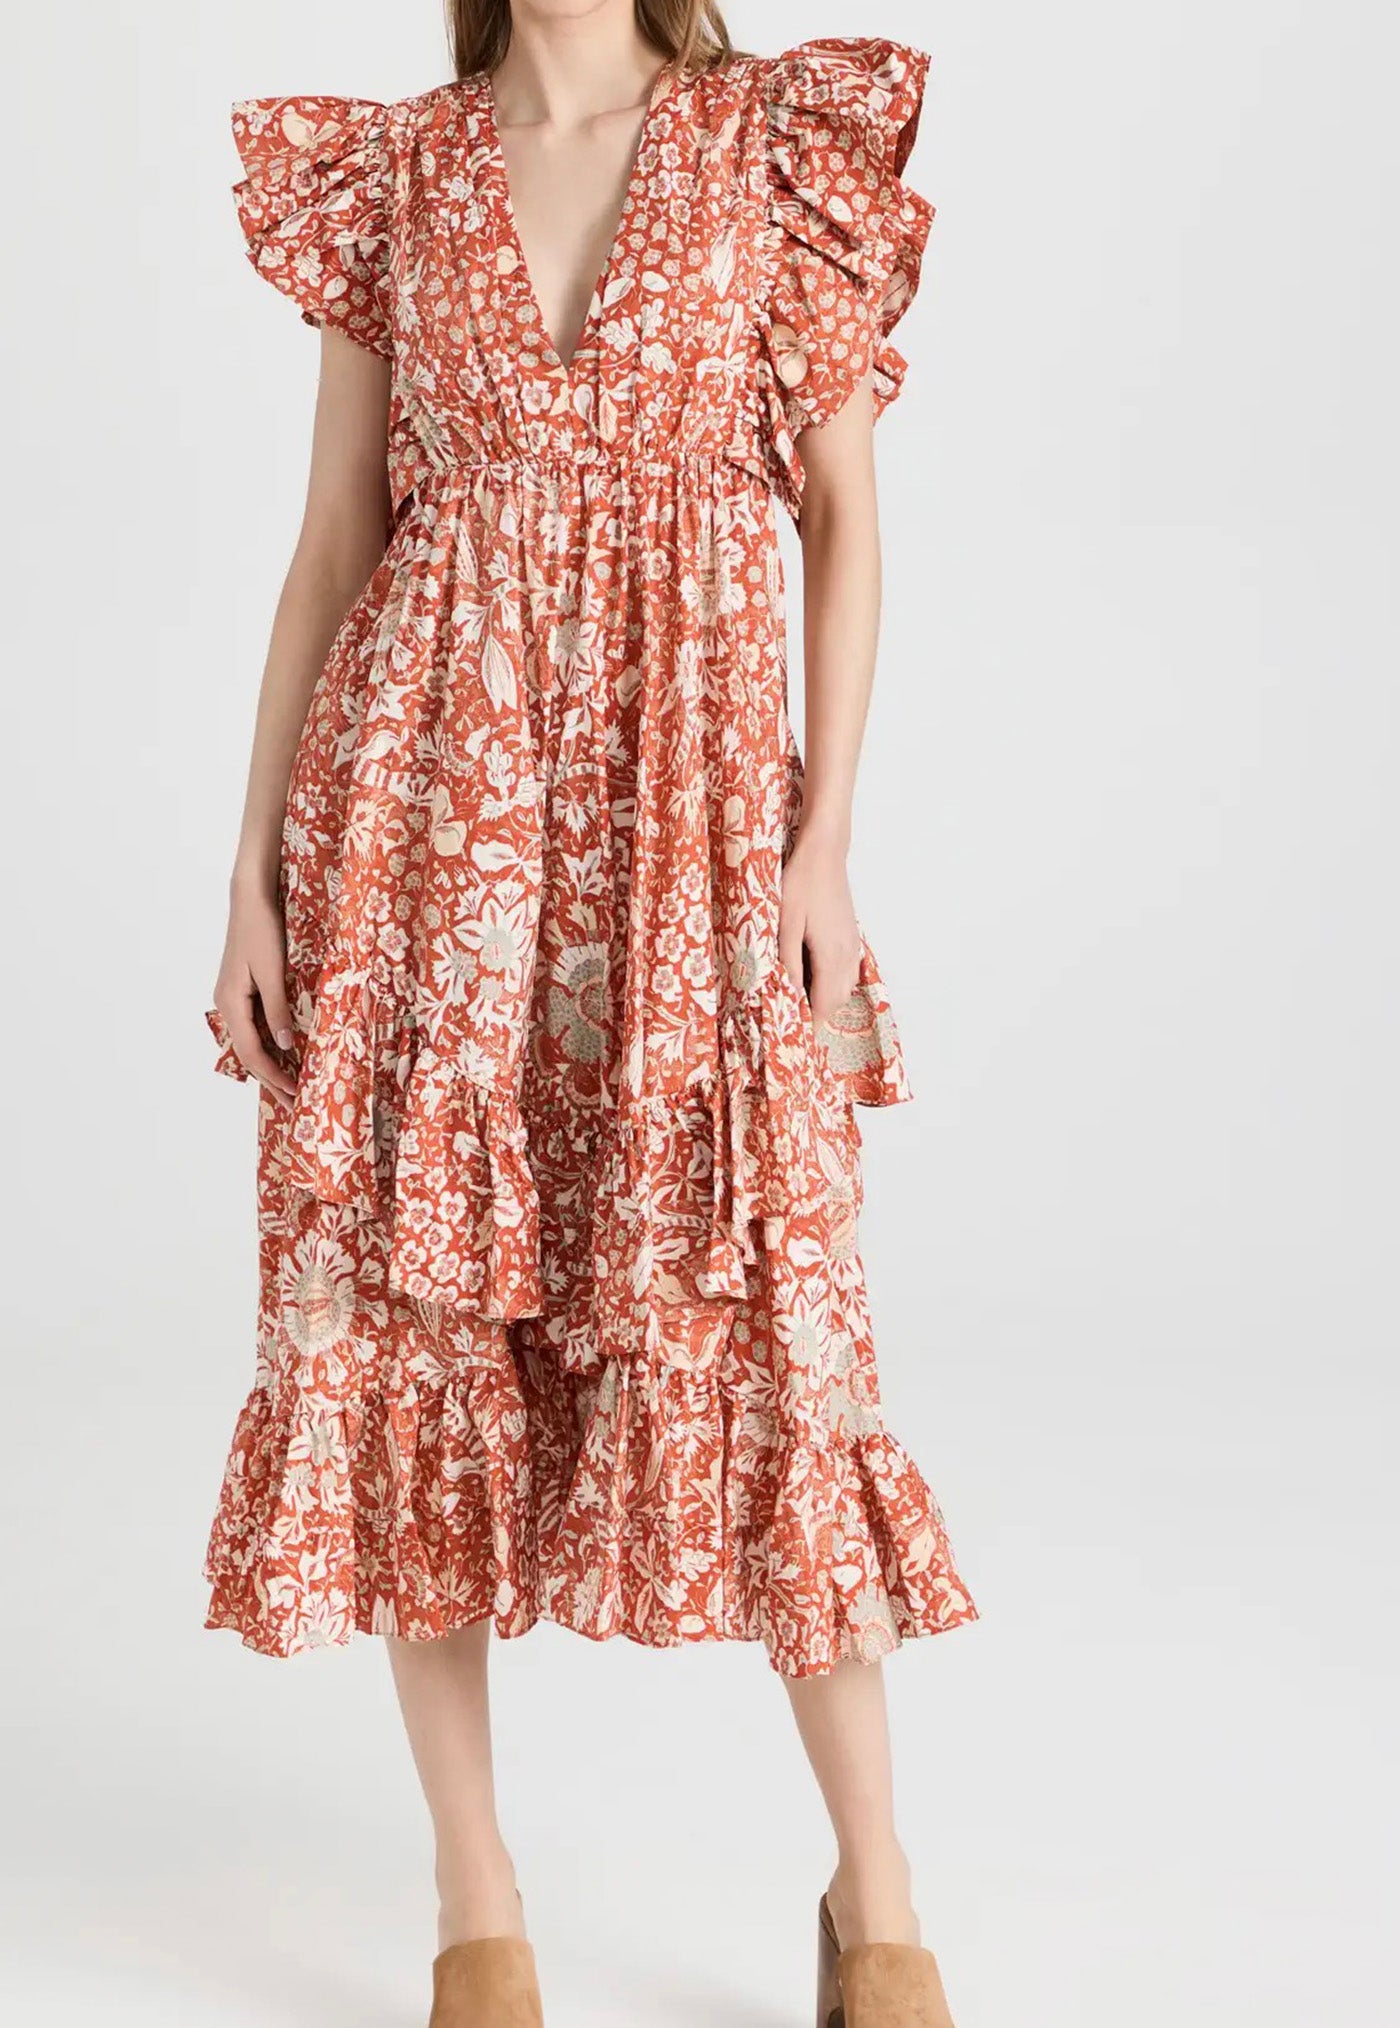 Delila Dress - Orange Blossom sold by Angel Divine